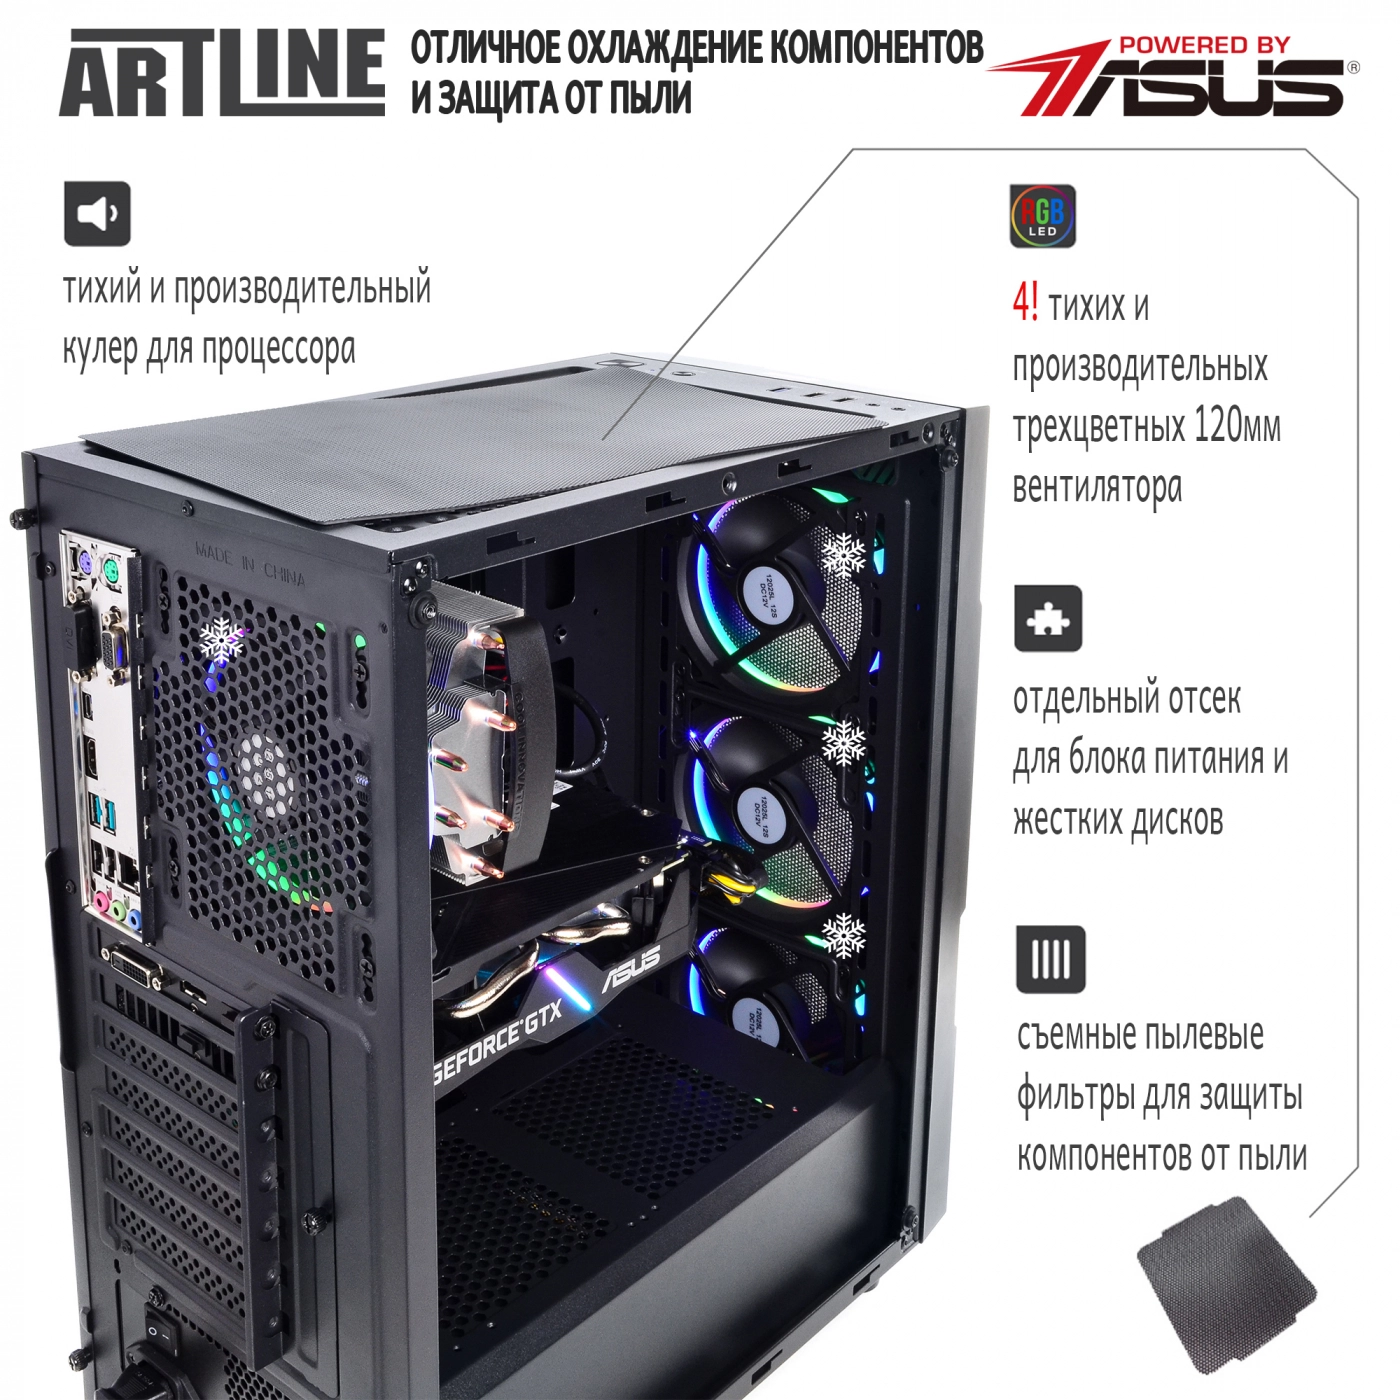 Купить Компьютер ARTLINE Gaming X74v14 - фото 2